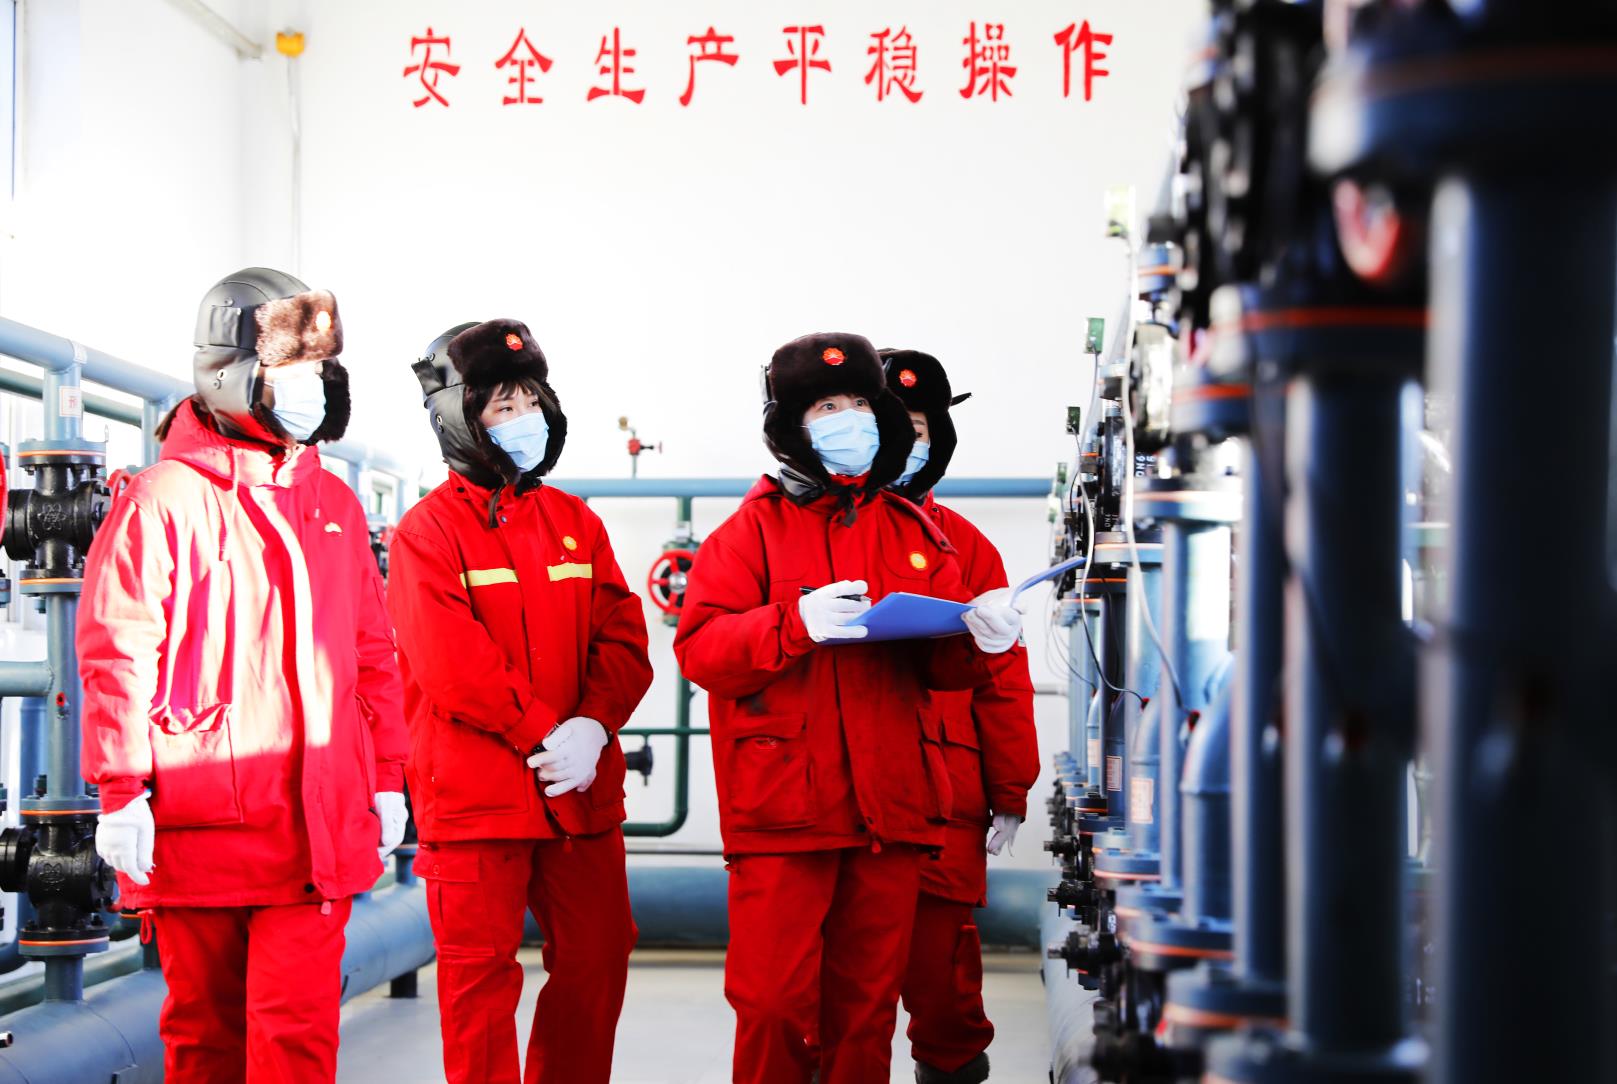 68大庆油田第一采油厂第三油矿308队员工查看生产状况.